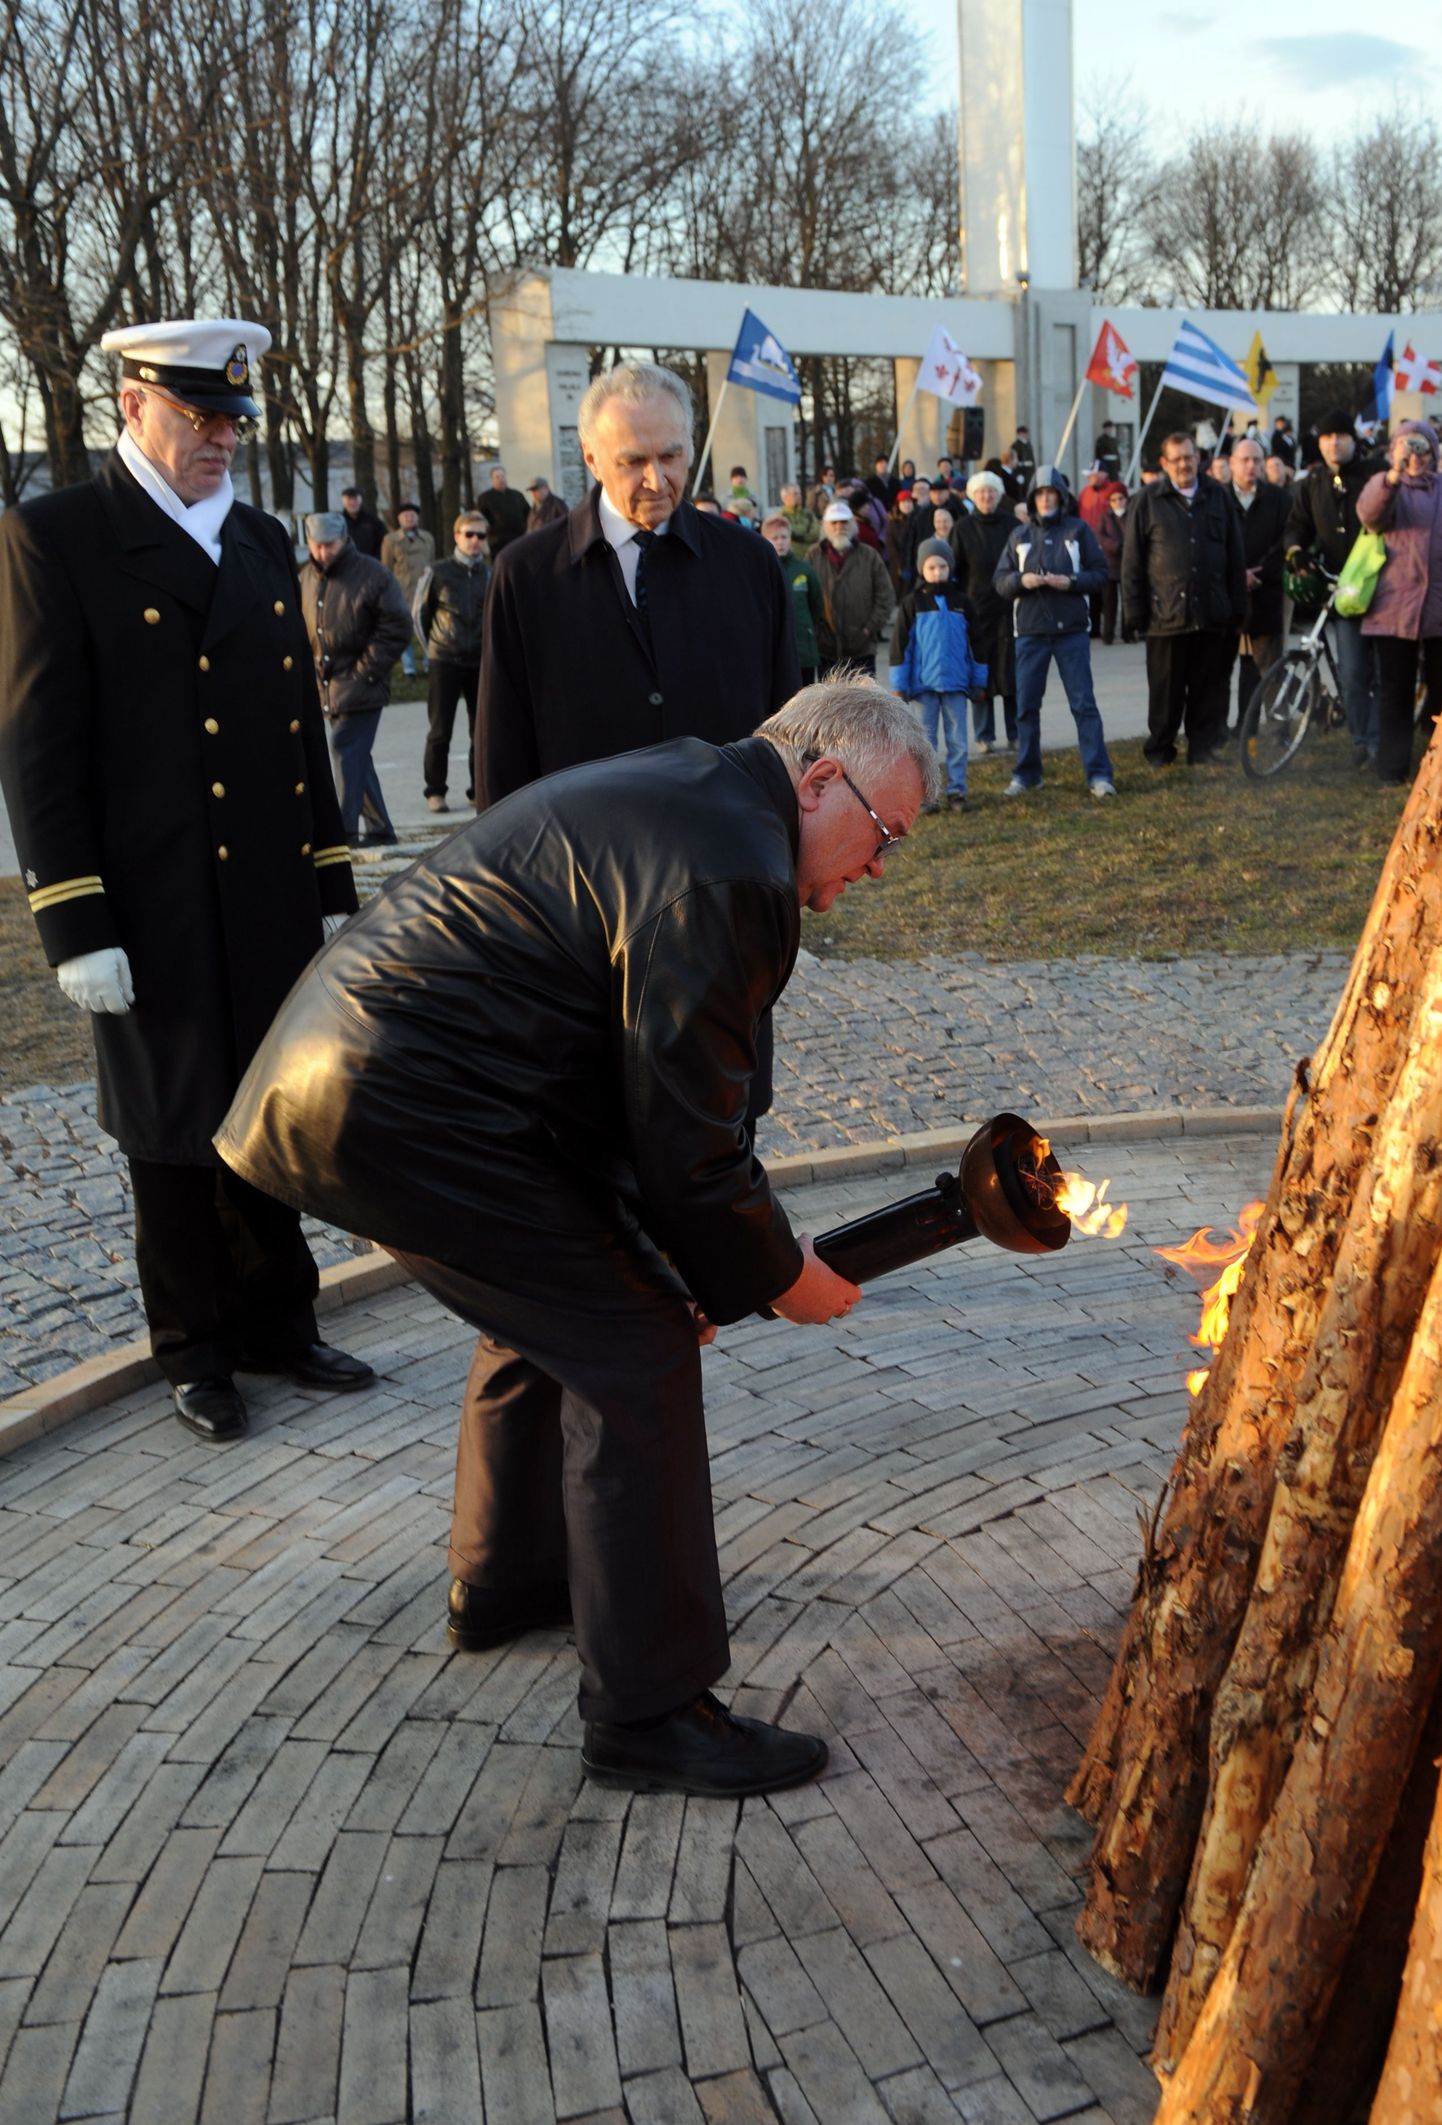 Tänavu süütas Jüriöö ülestõusu 666. aastapäeva puhul Jüriöö pargis tule Tallinna linnapea Edgar Savisaar.